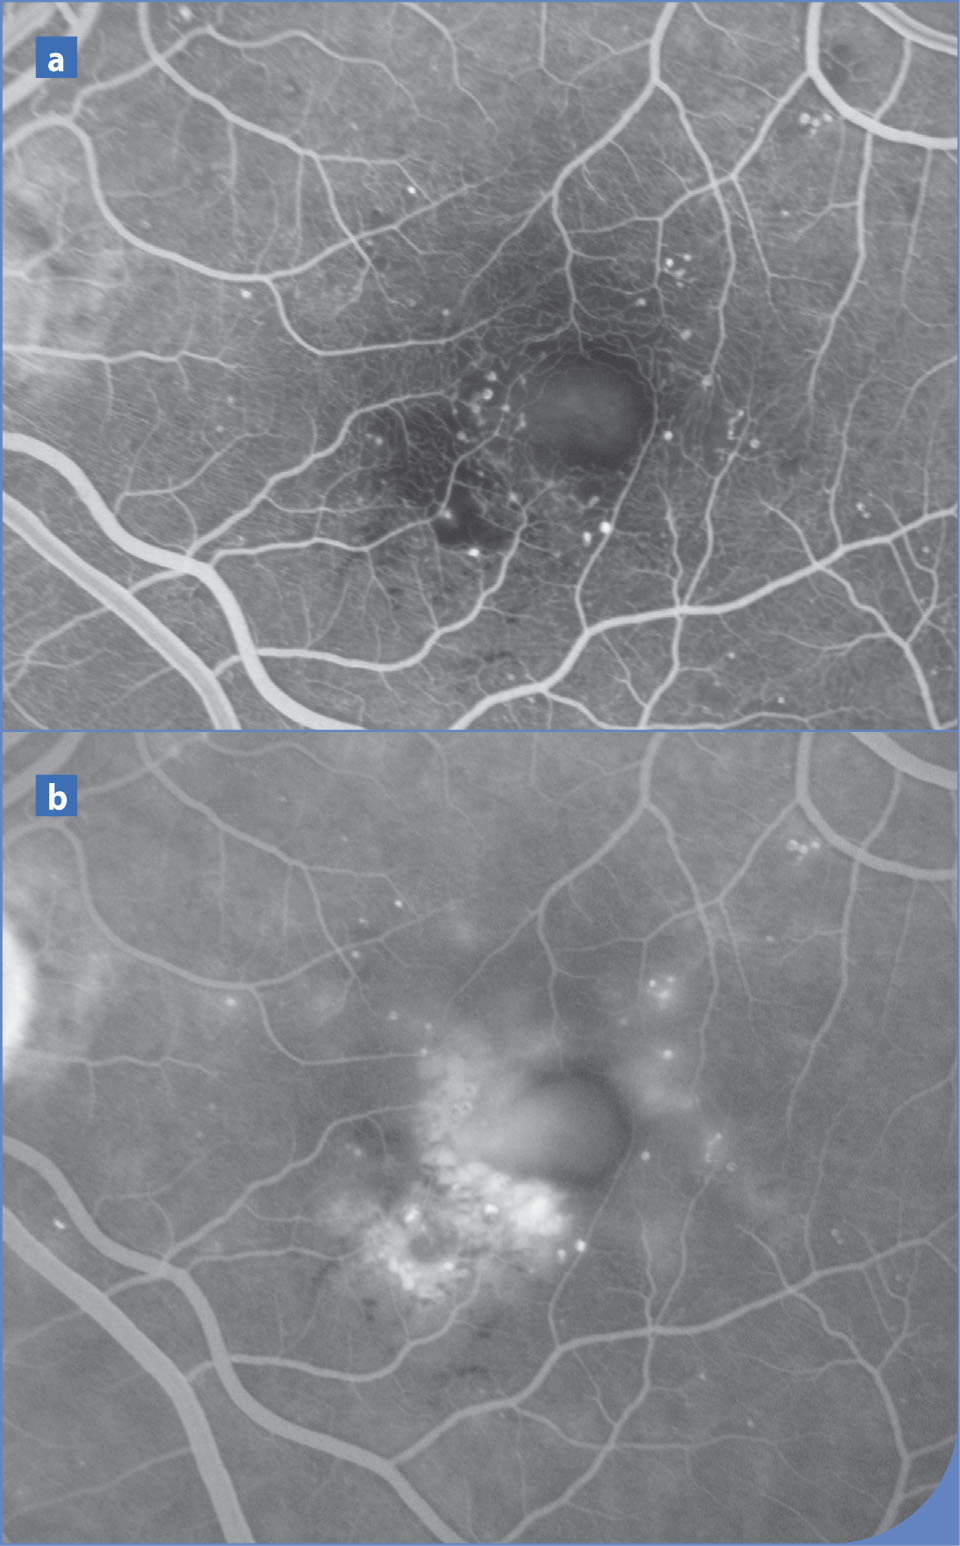 Bilan d'imagerie d'un œdème maculaire diabétique en OCT et en angiographie à la fluorescéine - Figure 6